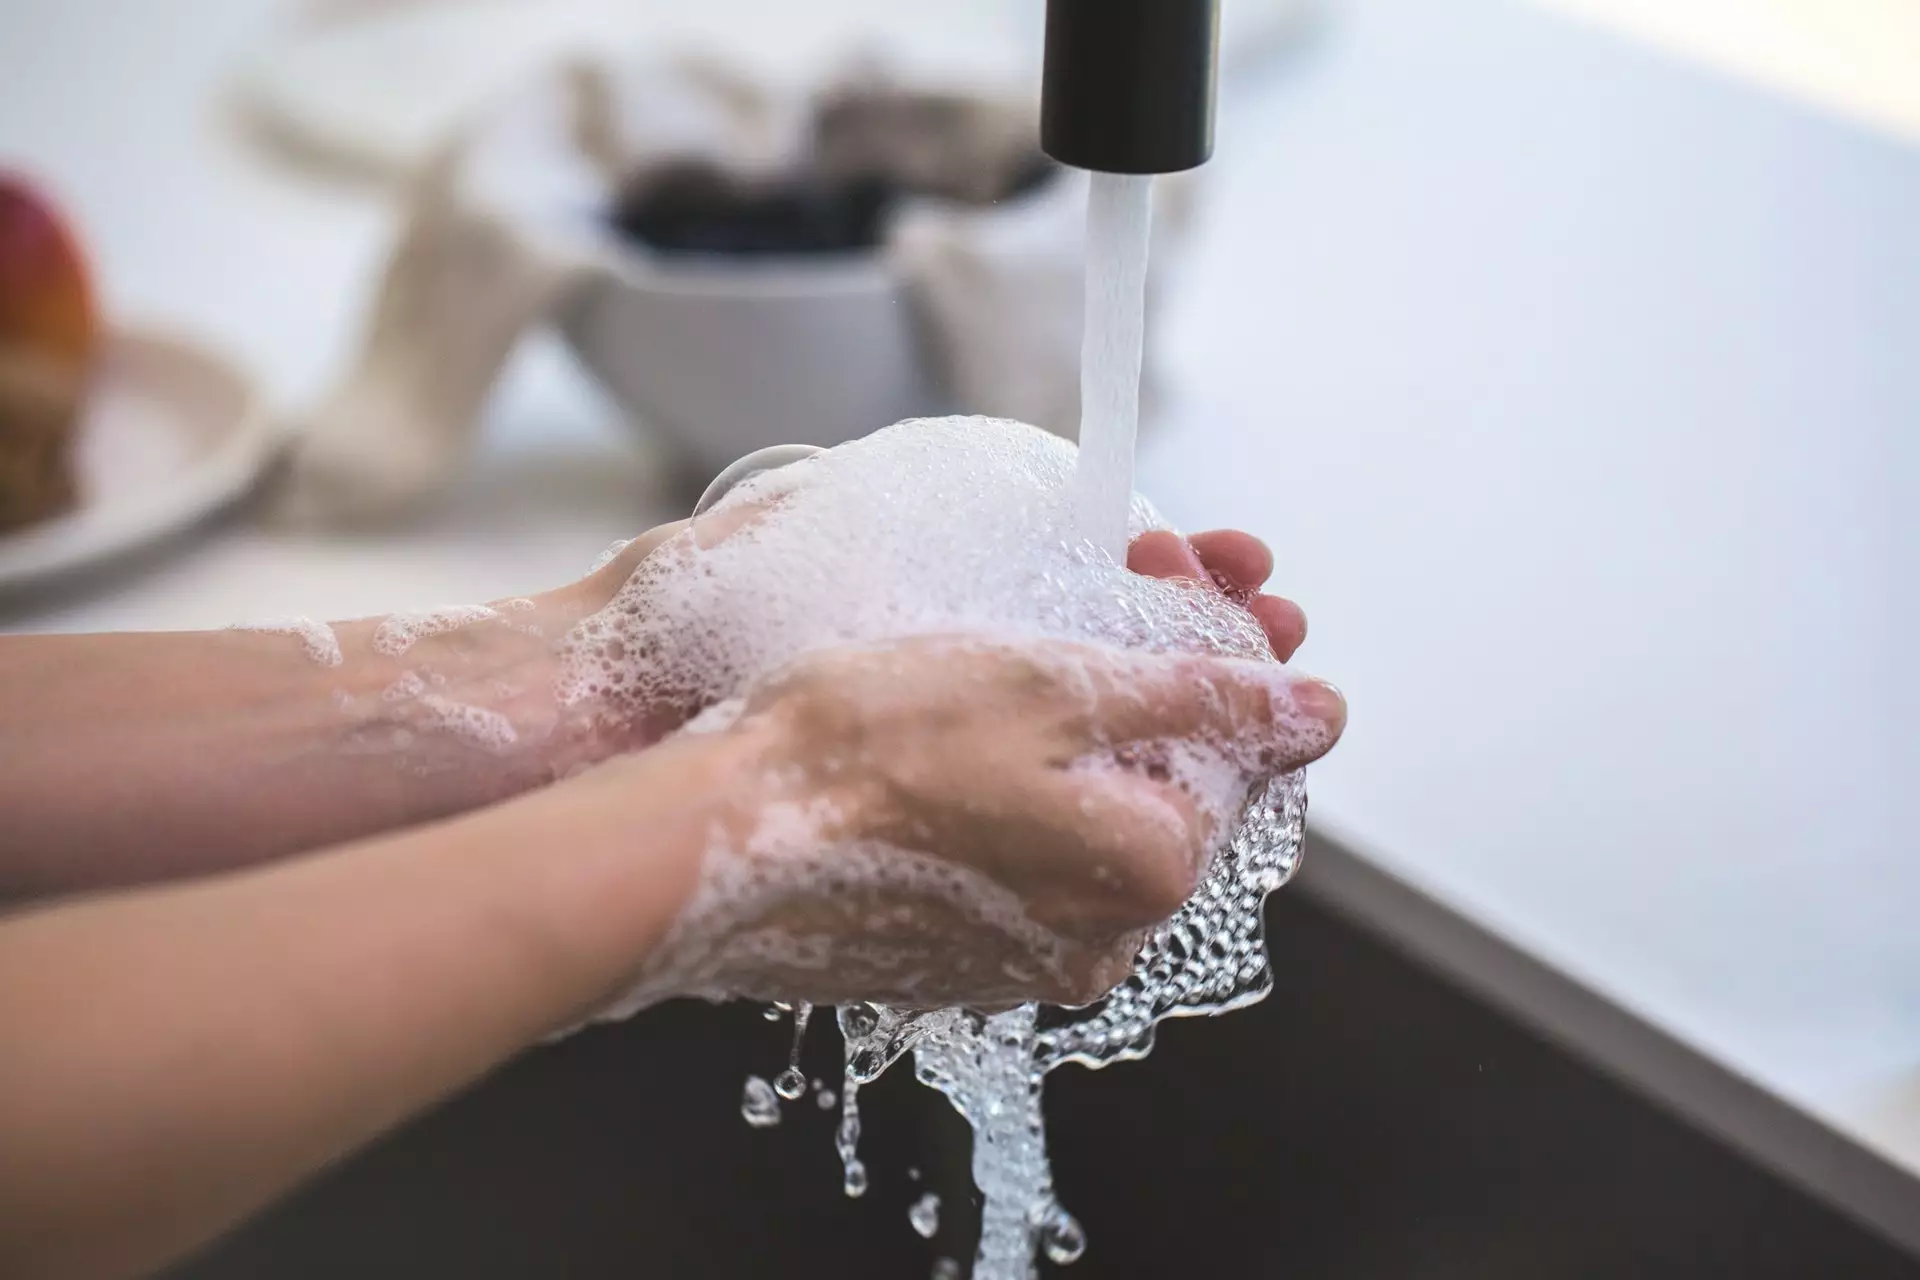 Фабричное мыло хорошо очищает кожу, но часто вызывает ее сухость и раздражение